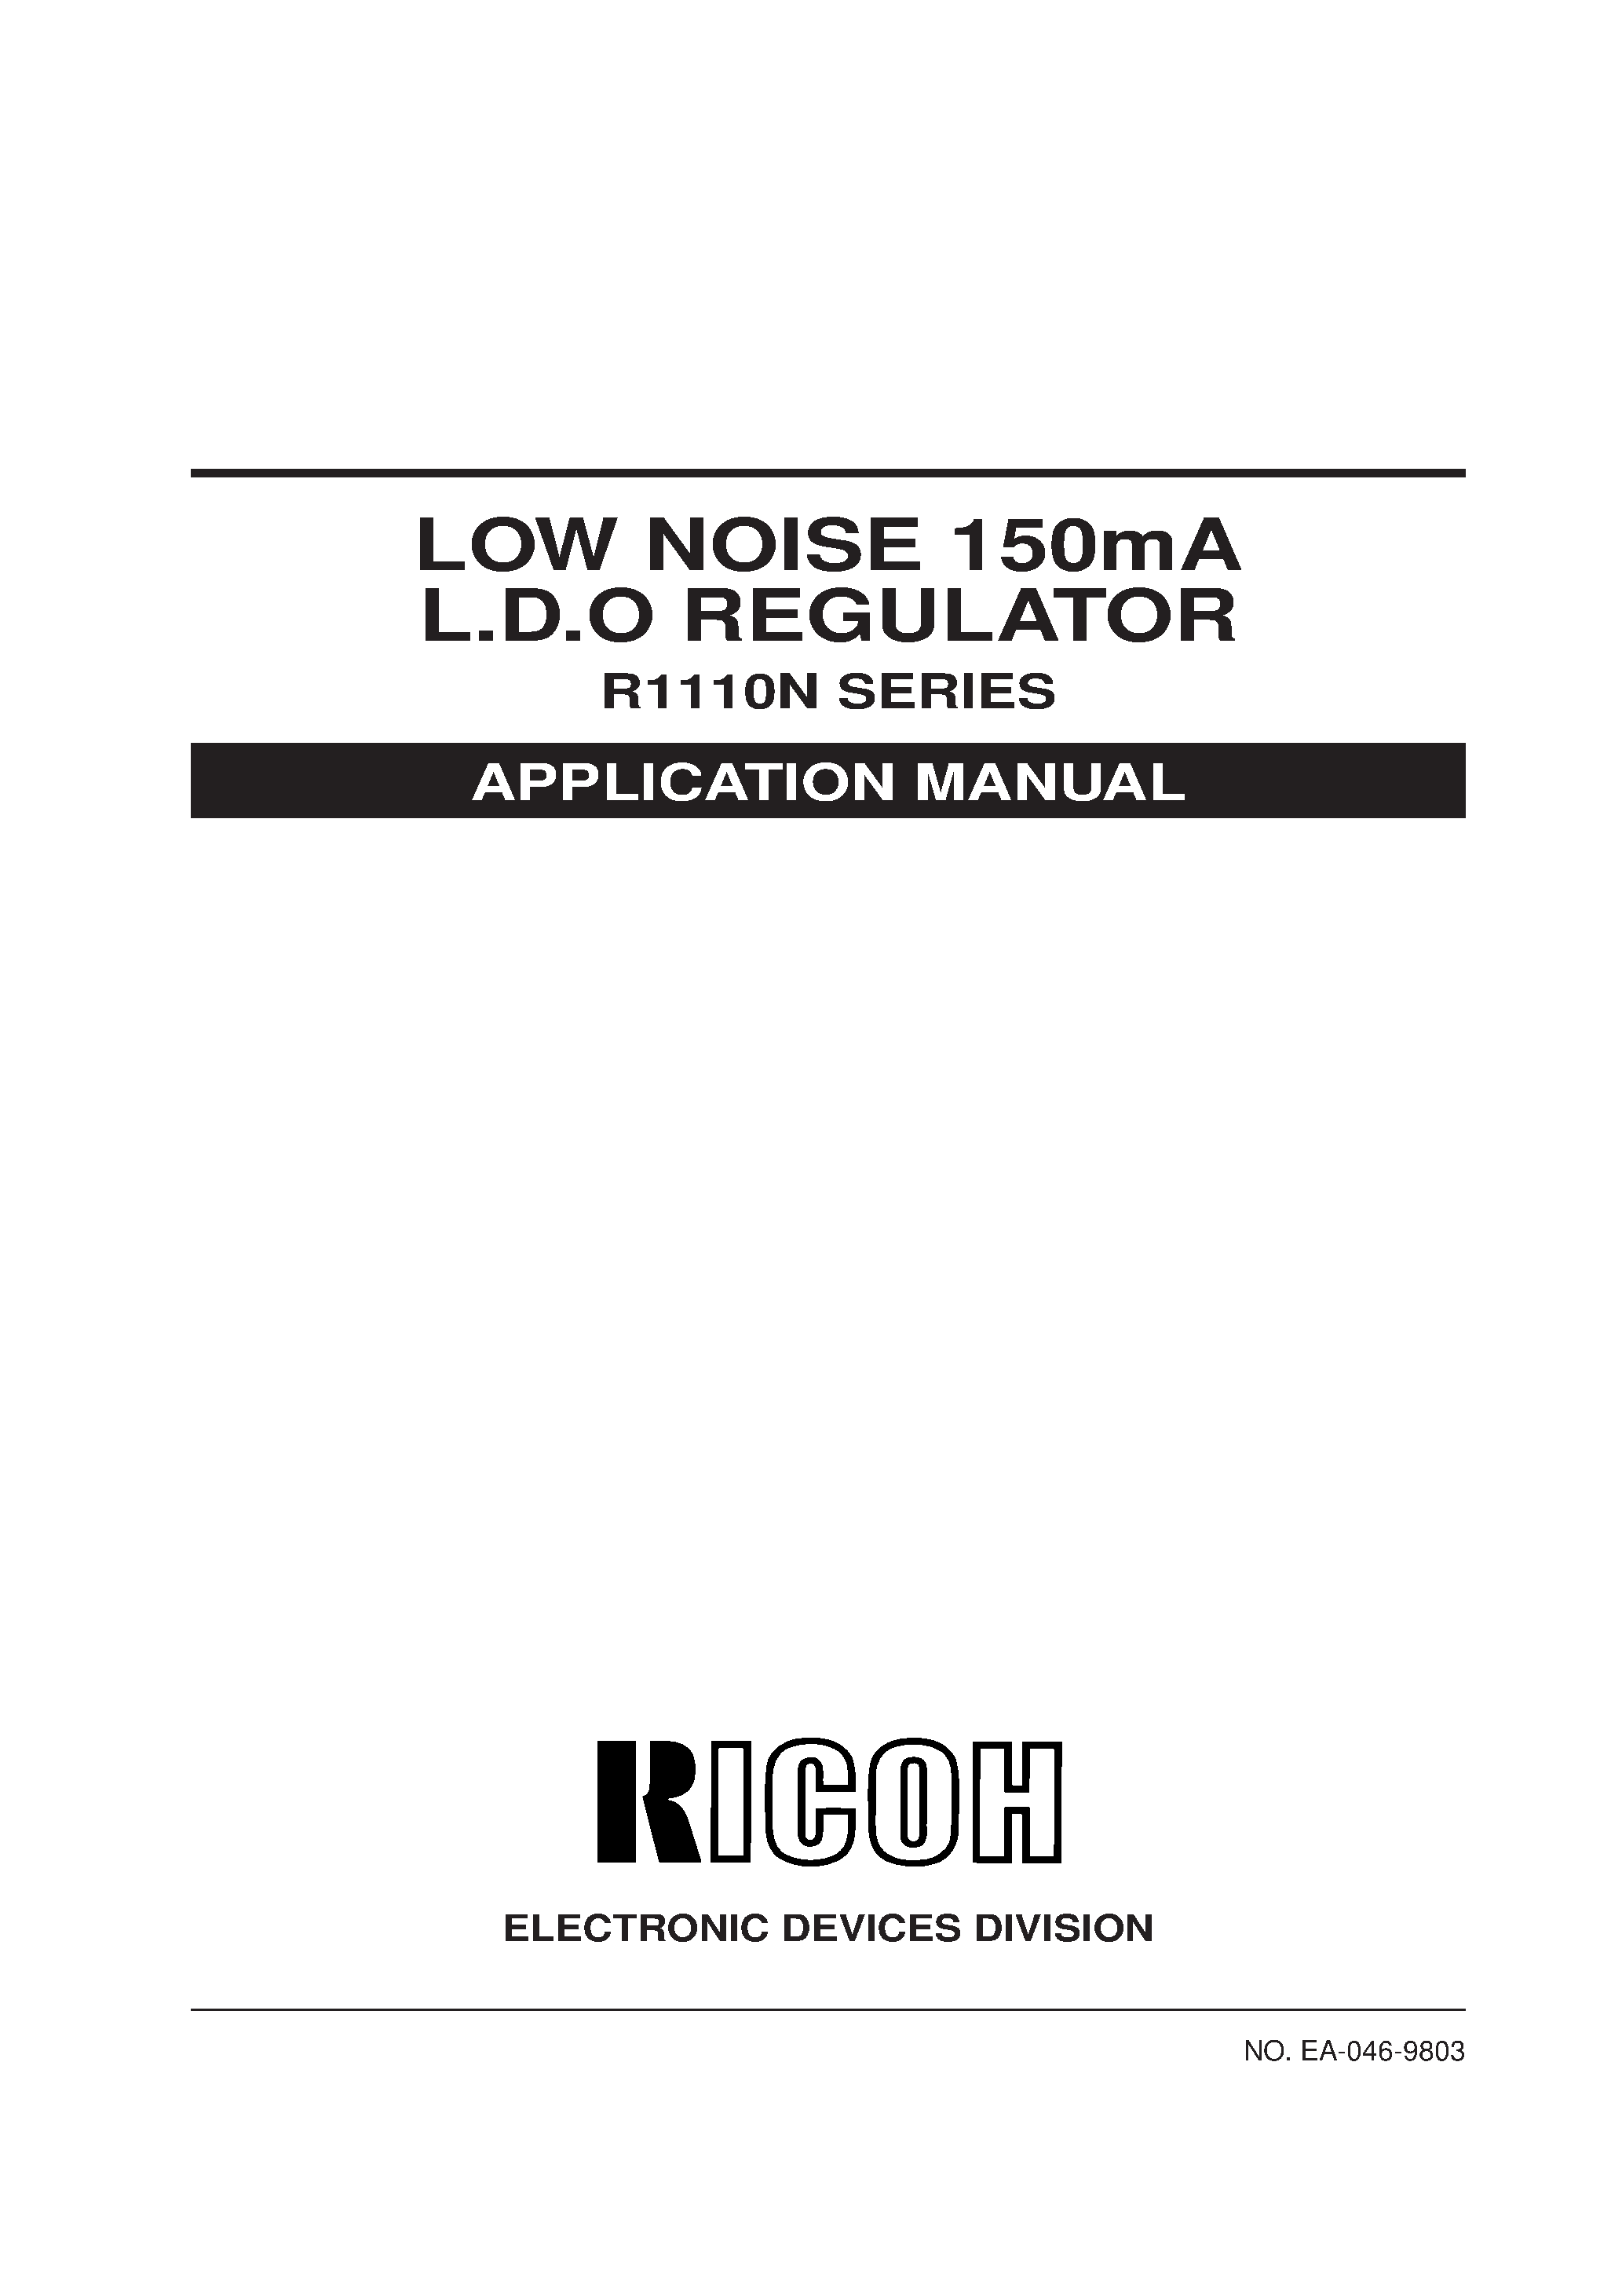 Даташит R1110N - LOW NOISE 150mA L.D.O REGULATOR страница 1